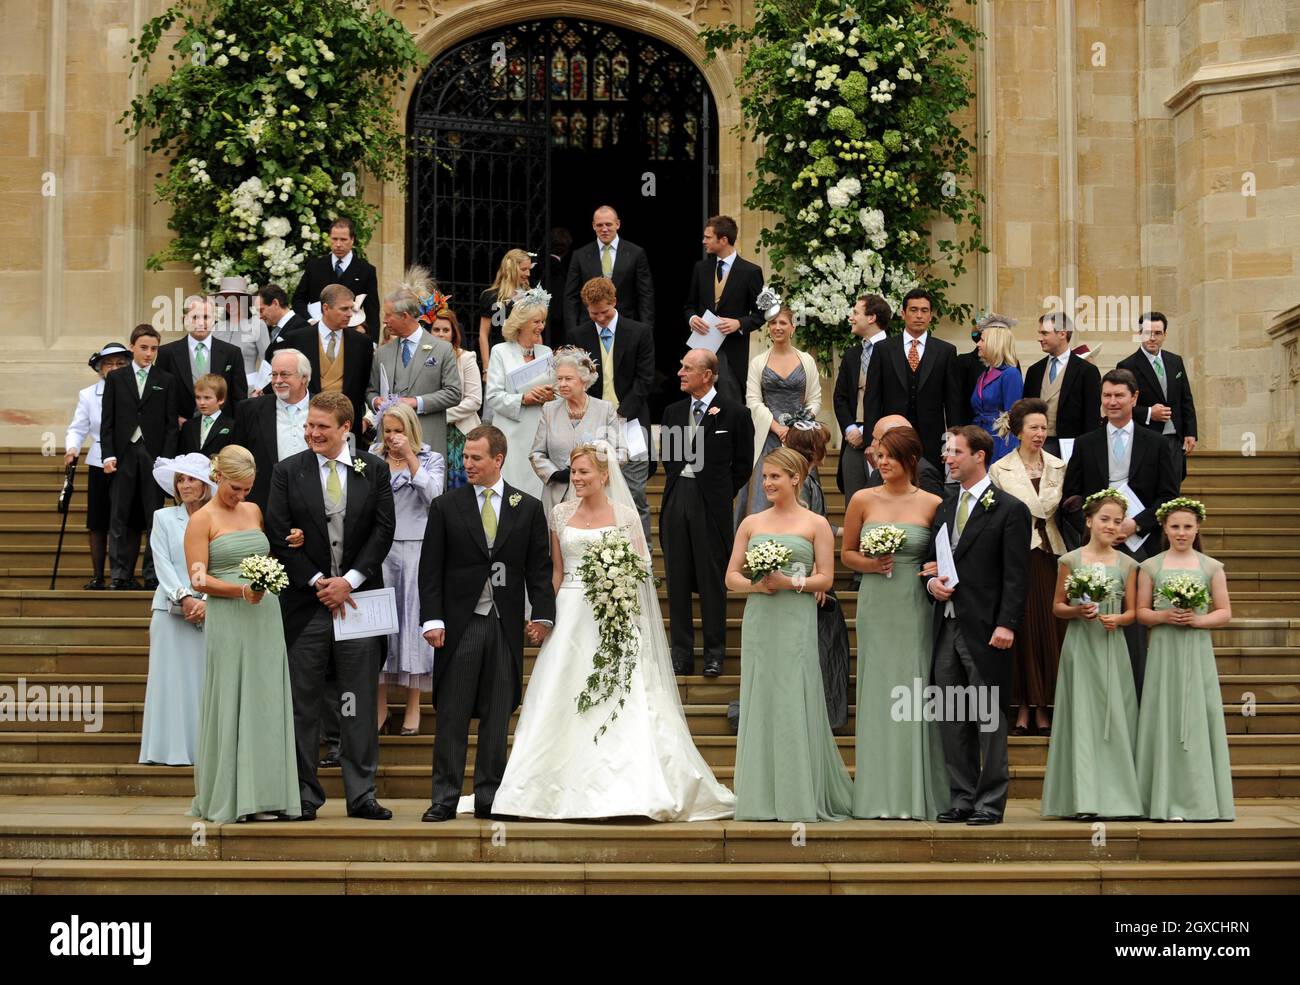 Peter Phillips und Autumn Kelly verlassen die St. George's Chapel nach ihrer Hochzeitszeremonie im Windor Castle, Windsor. Stockfoto